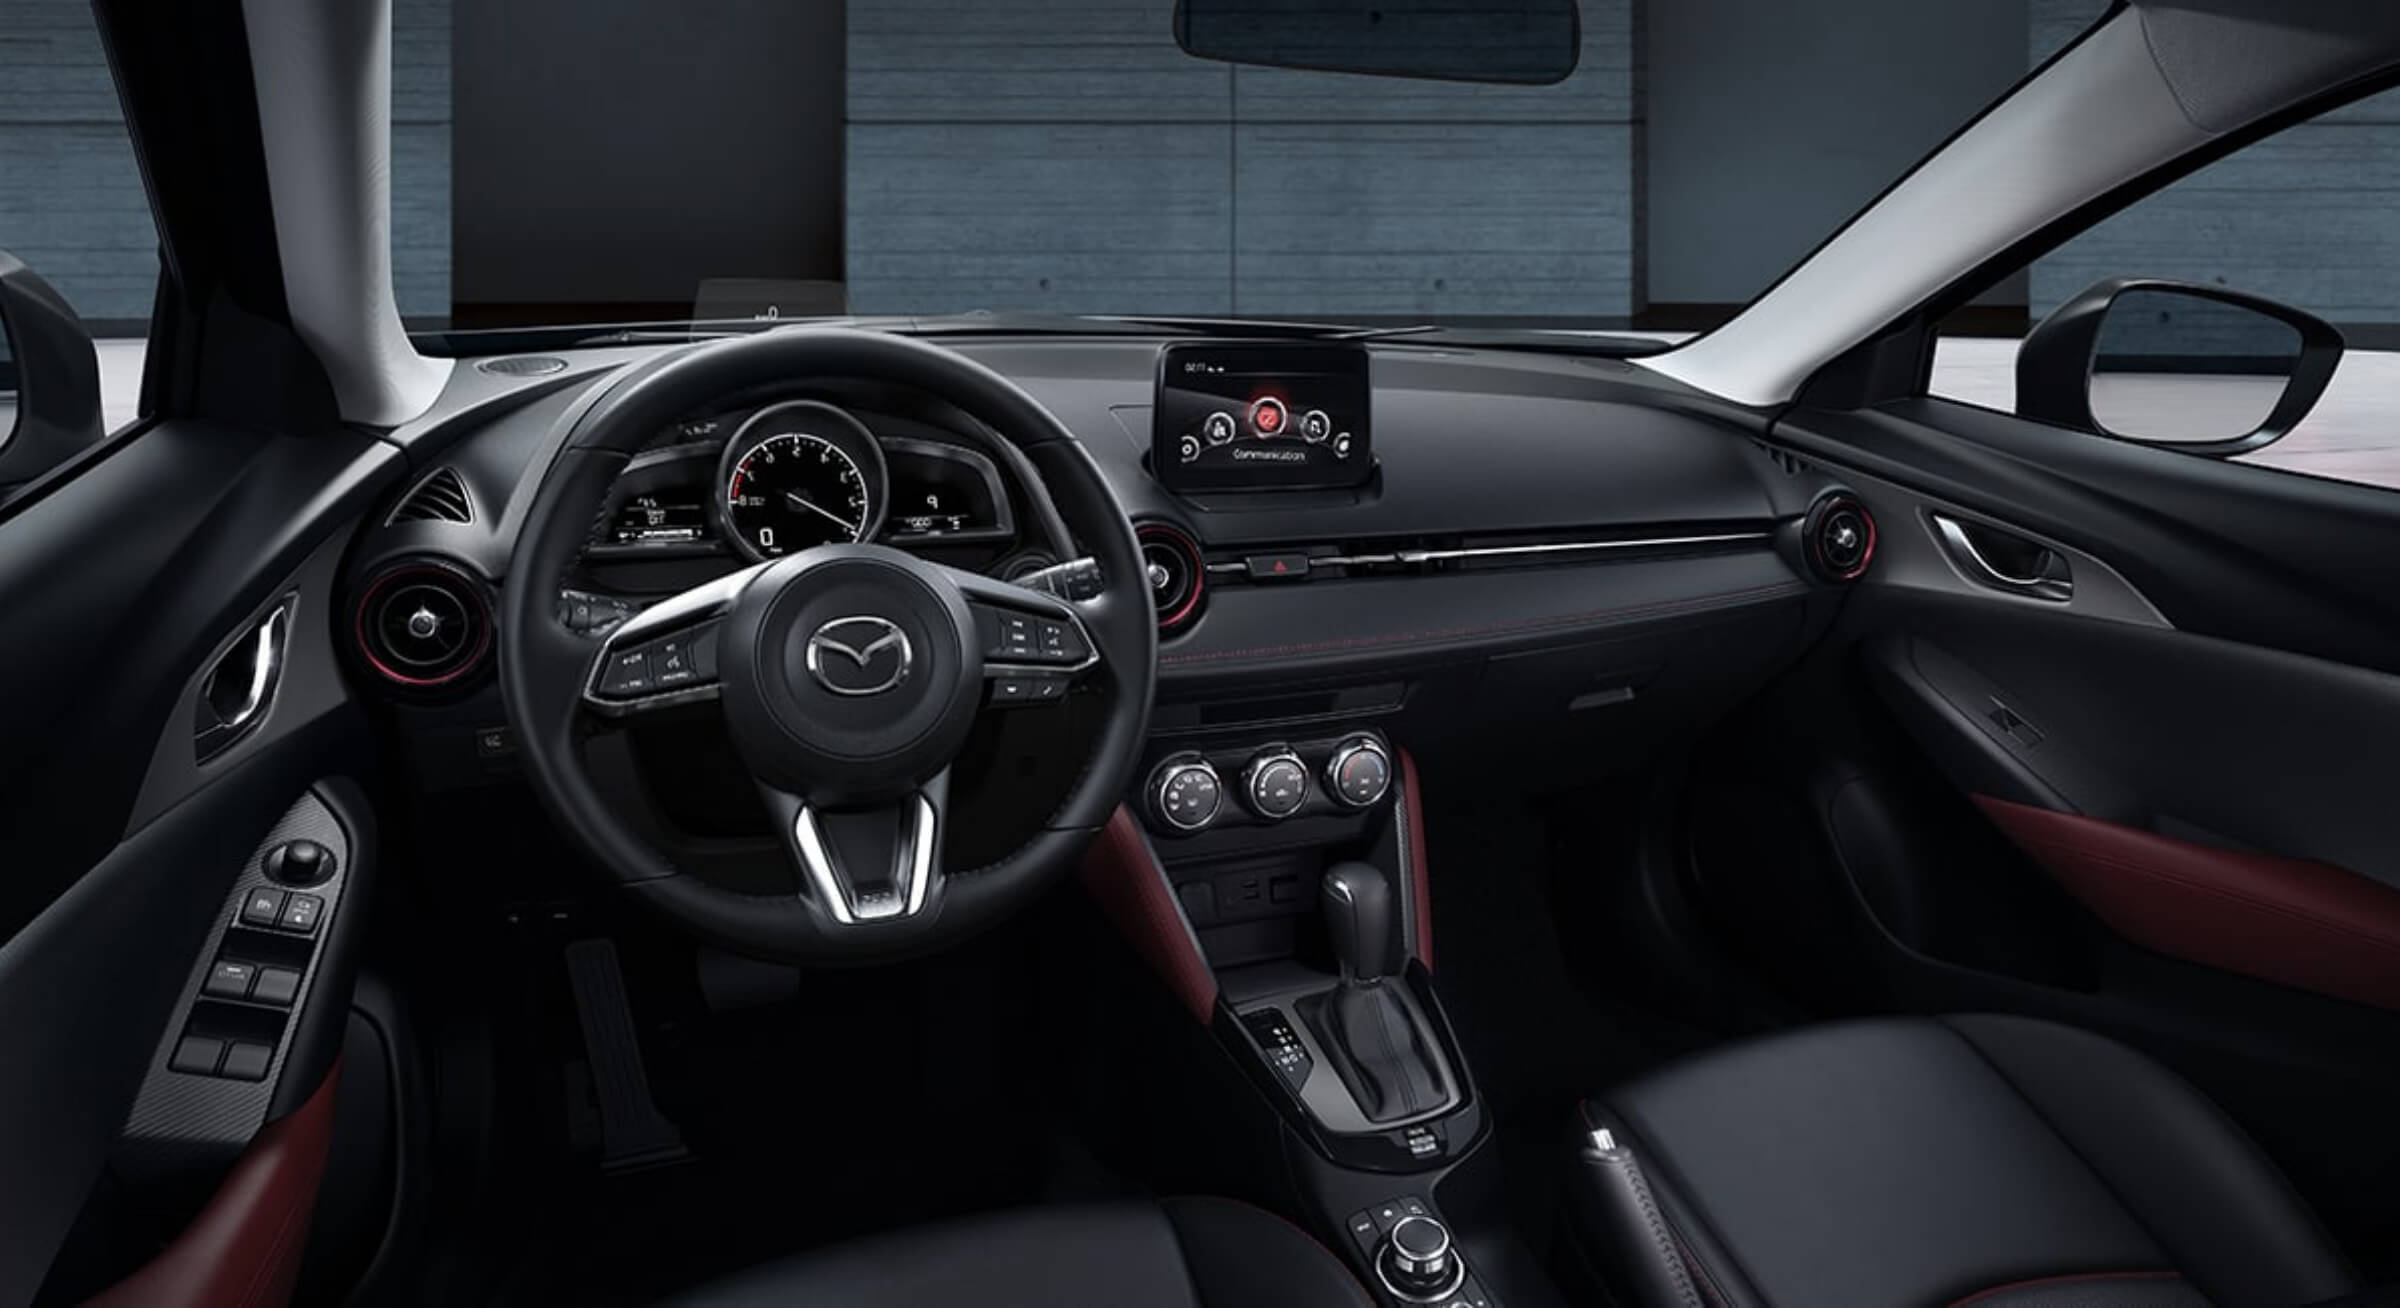 Mazda CX-3 interior - Cockpit